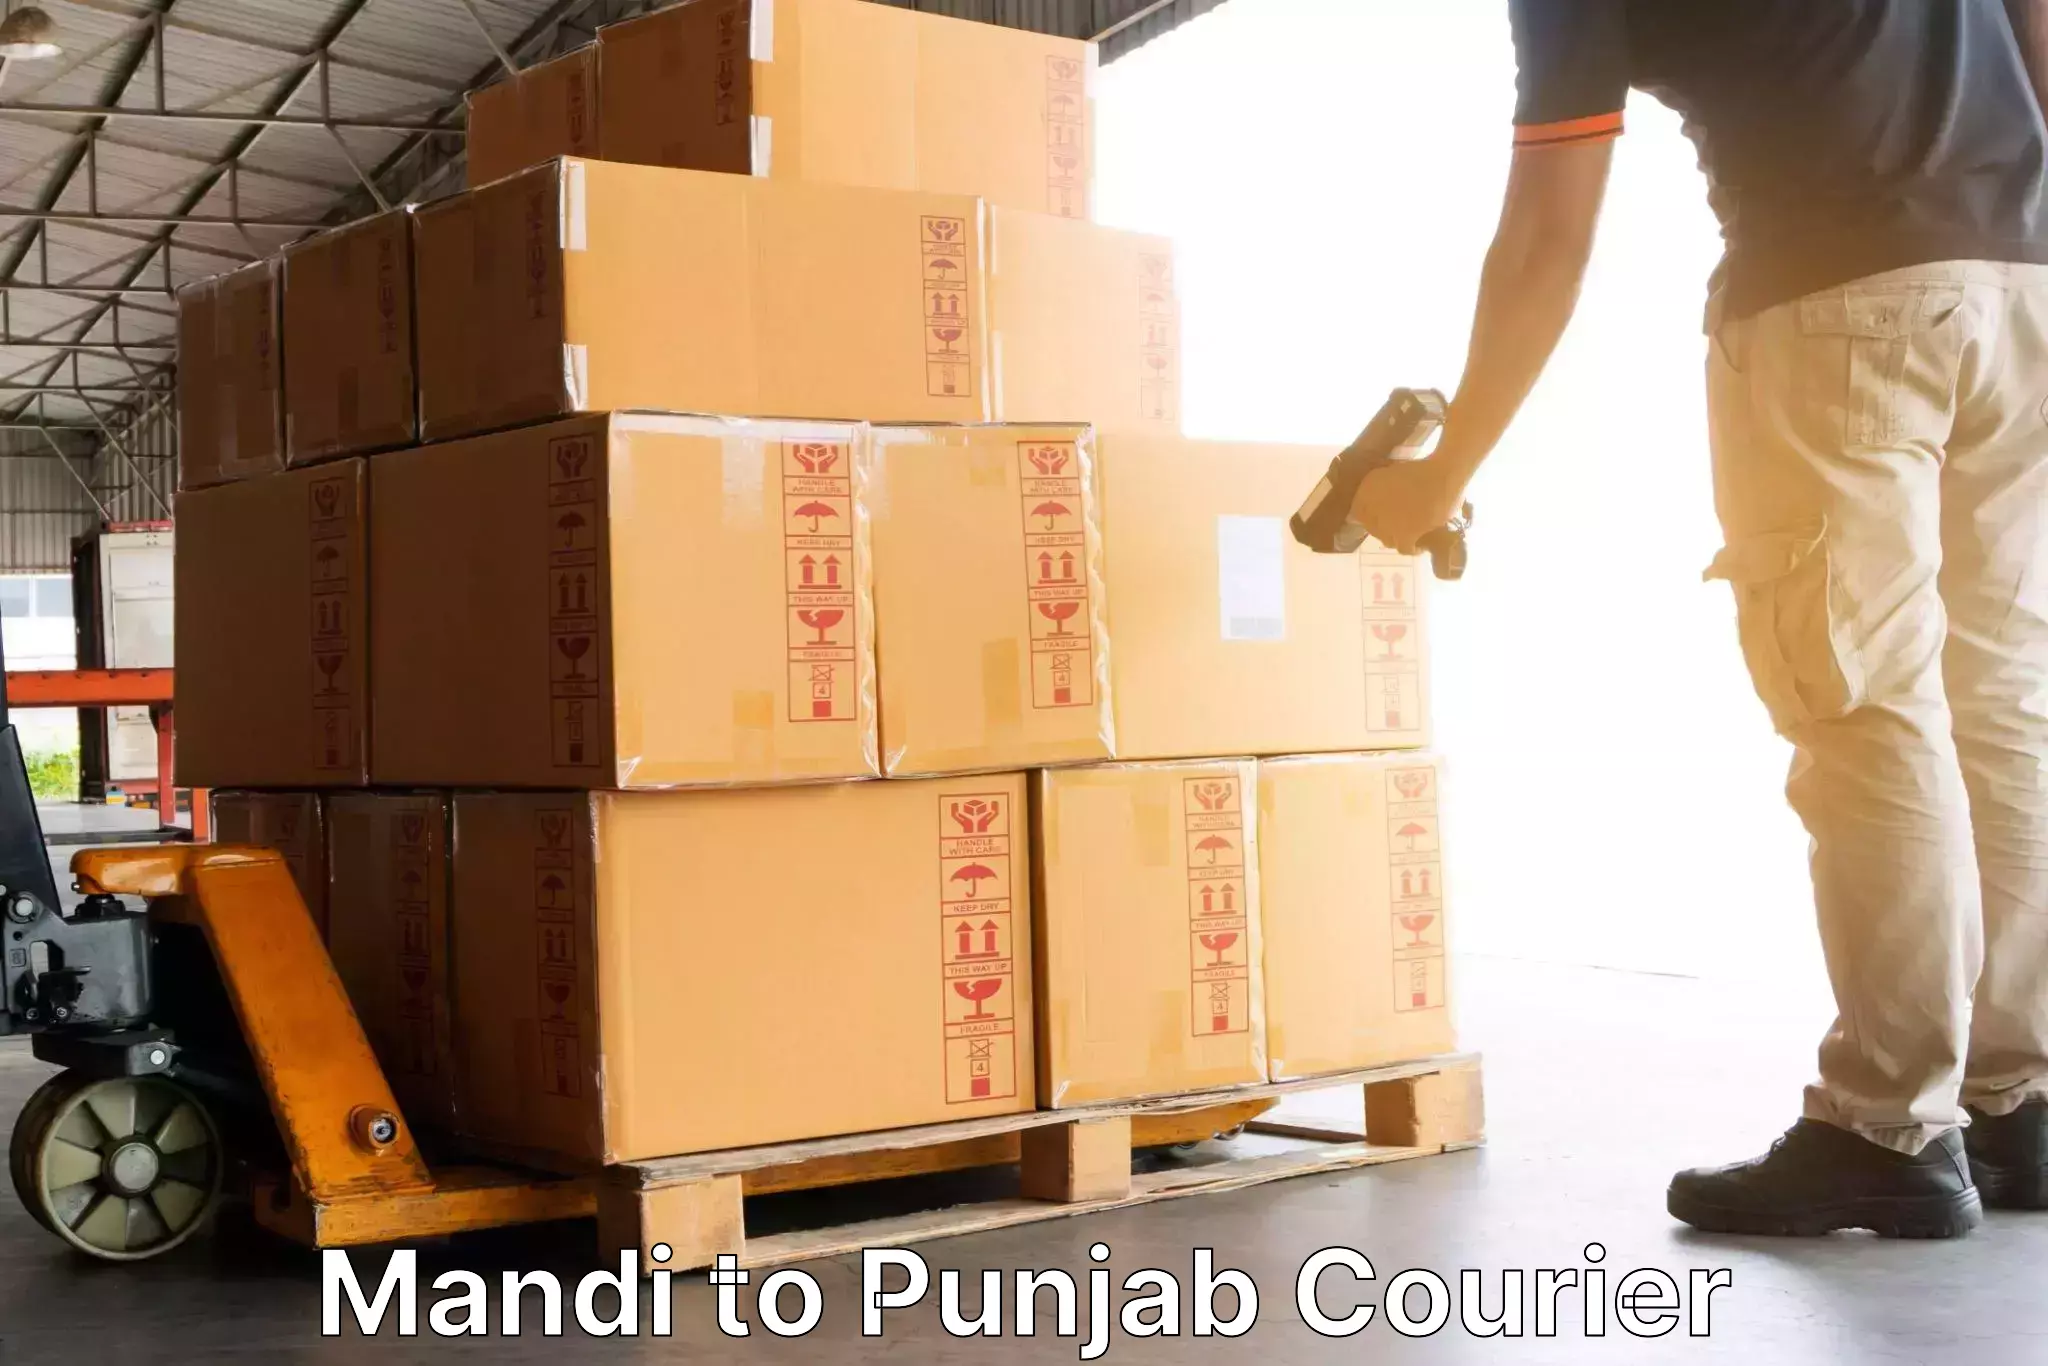 Modern delivery methods Mandi to Punjab